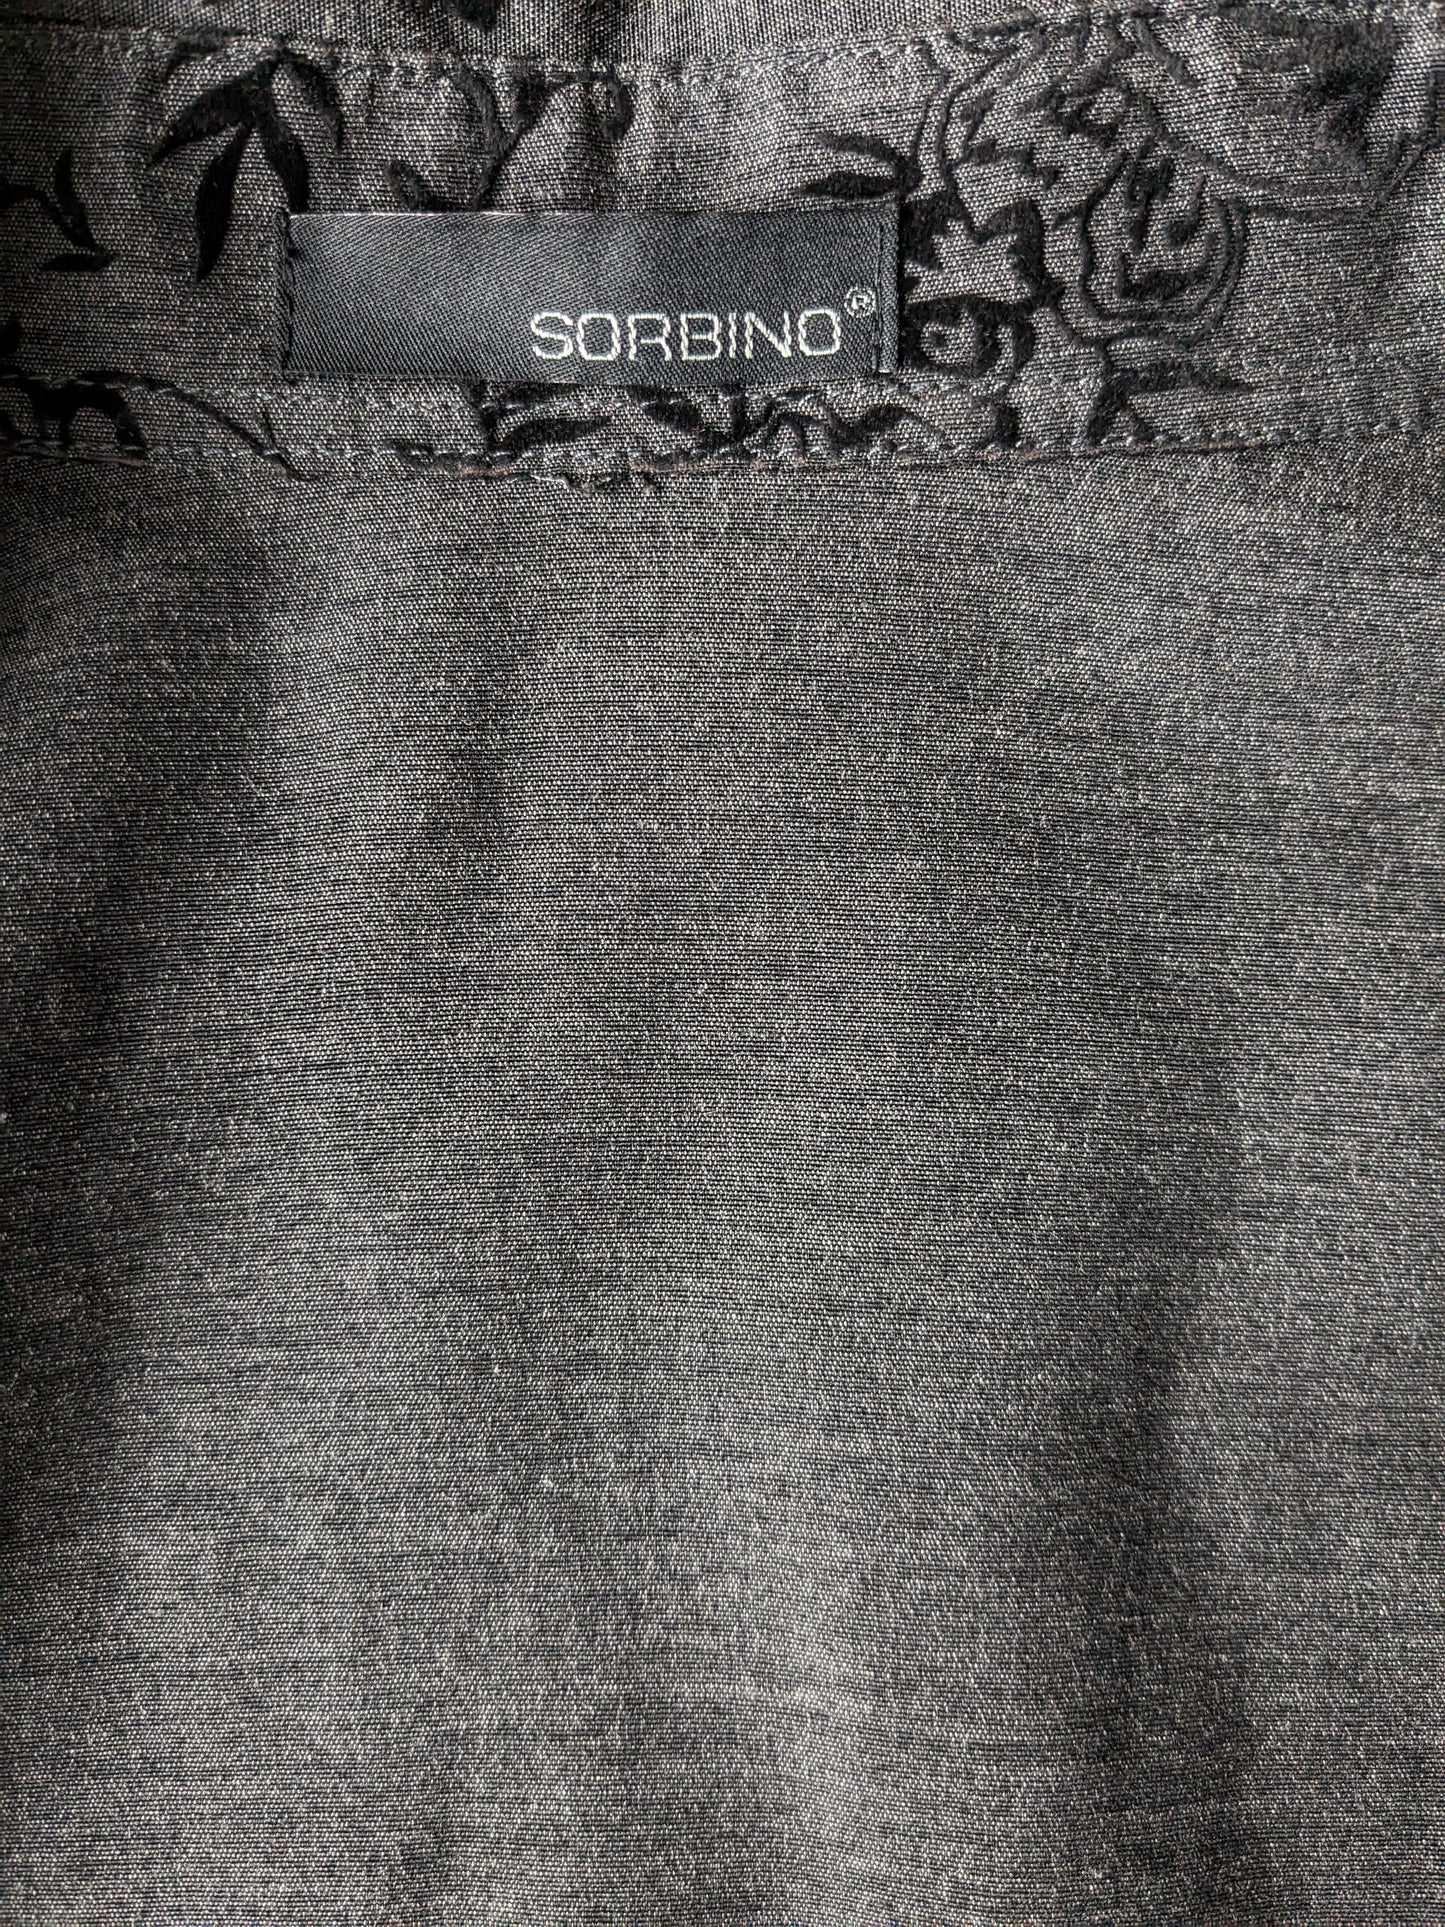 Sorbino Shirt. Floreale nero grigio. Taglia L.